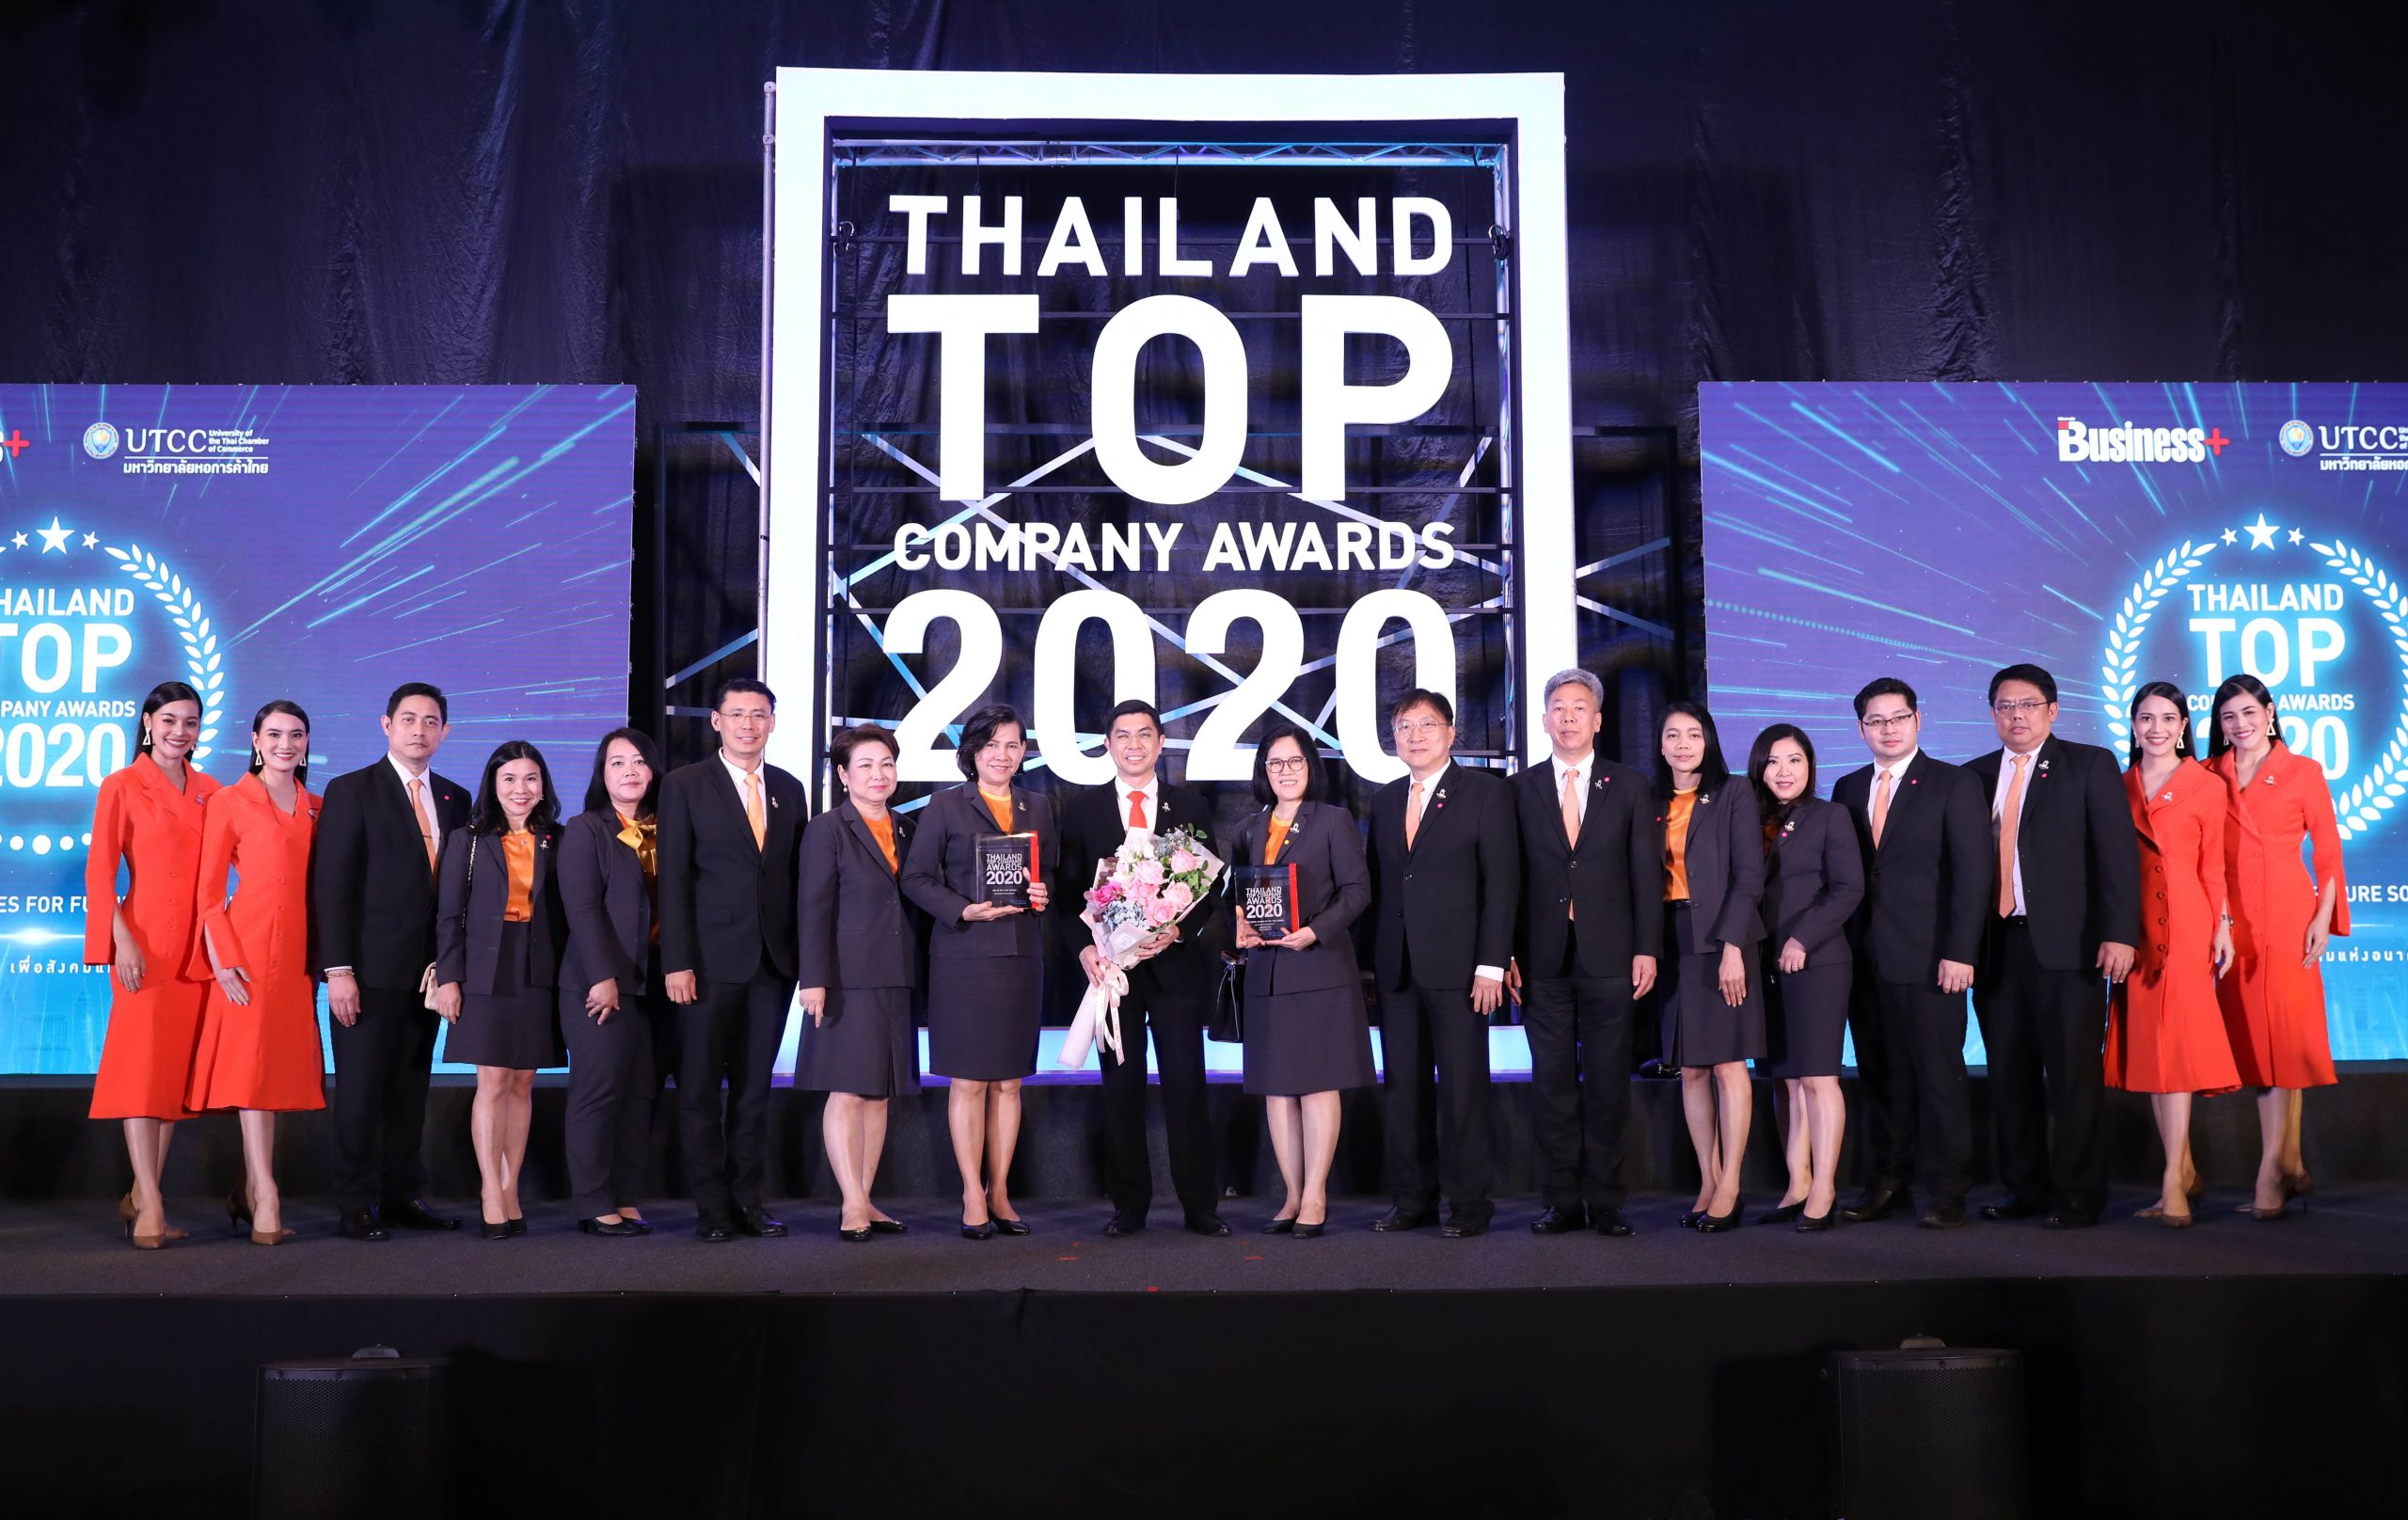 ธอส.คว้า 2 รางวัล THAILAND TOP COMPANY AWARDS 2020